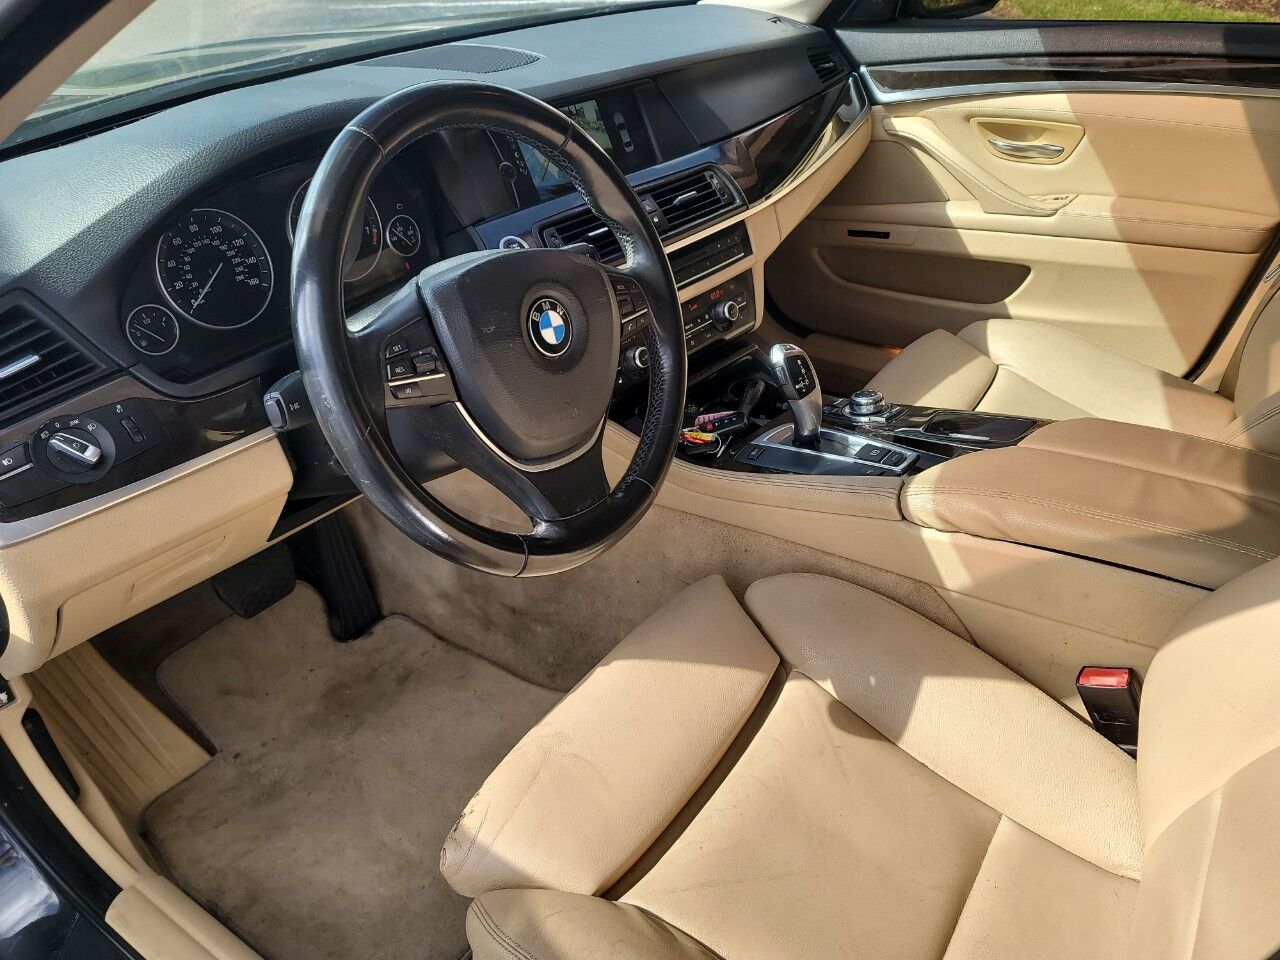 2011 BMW 5 Series Sedan - $9,900